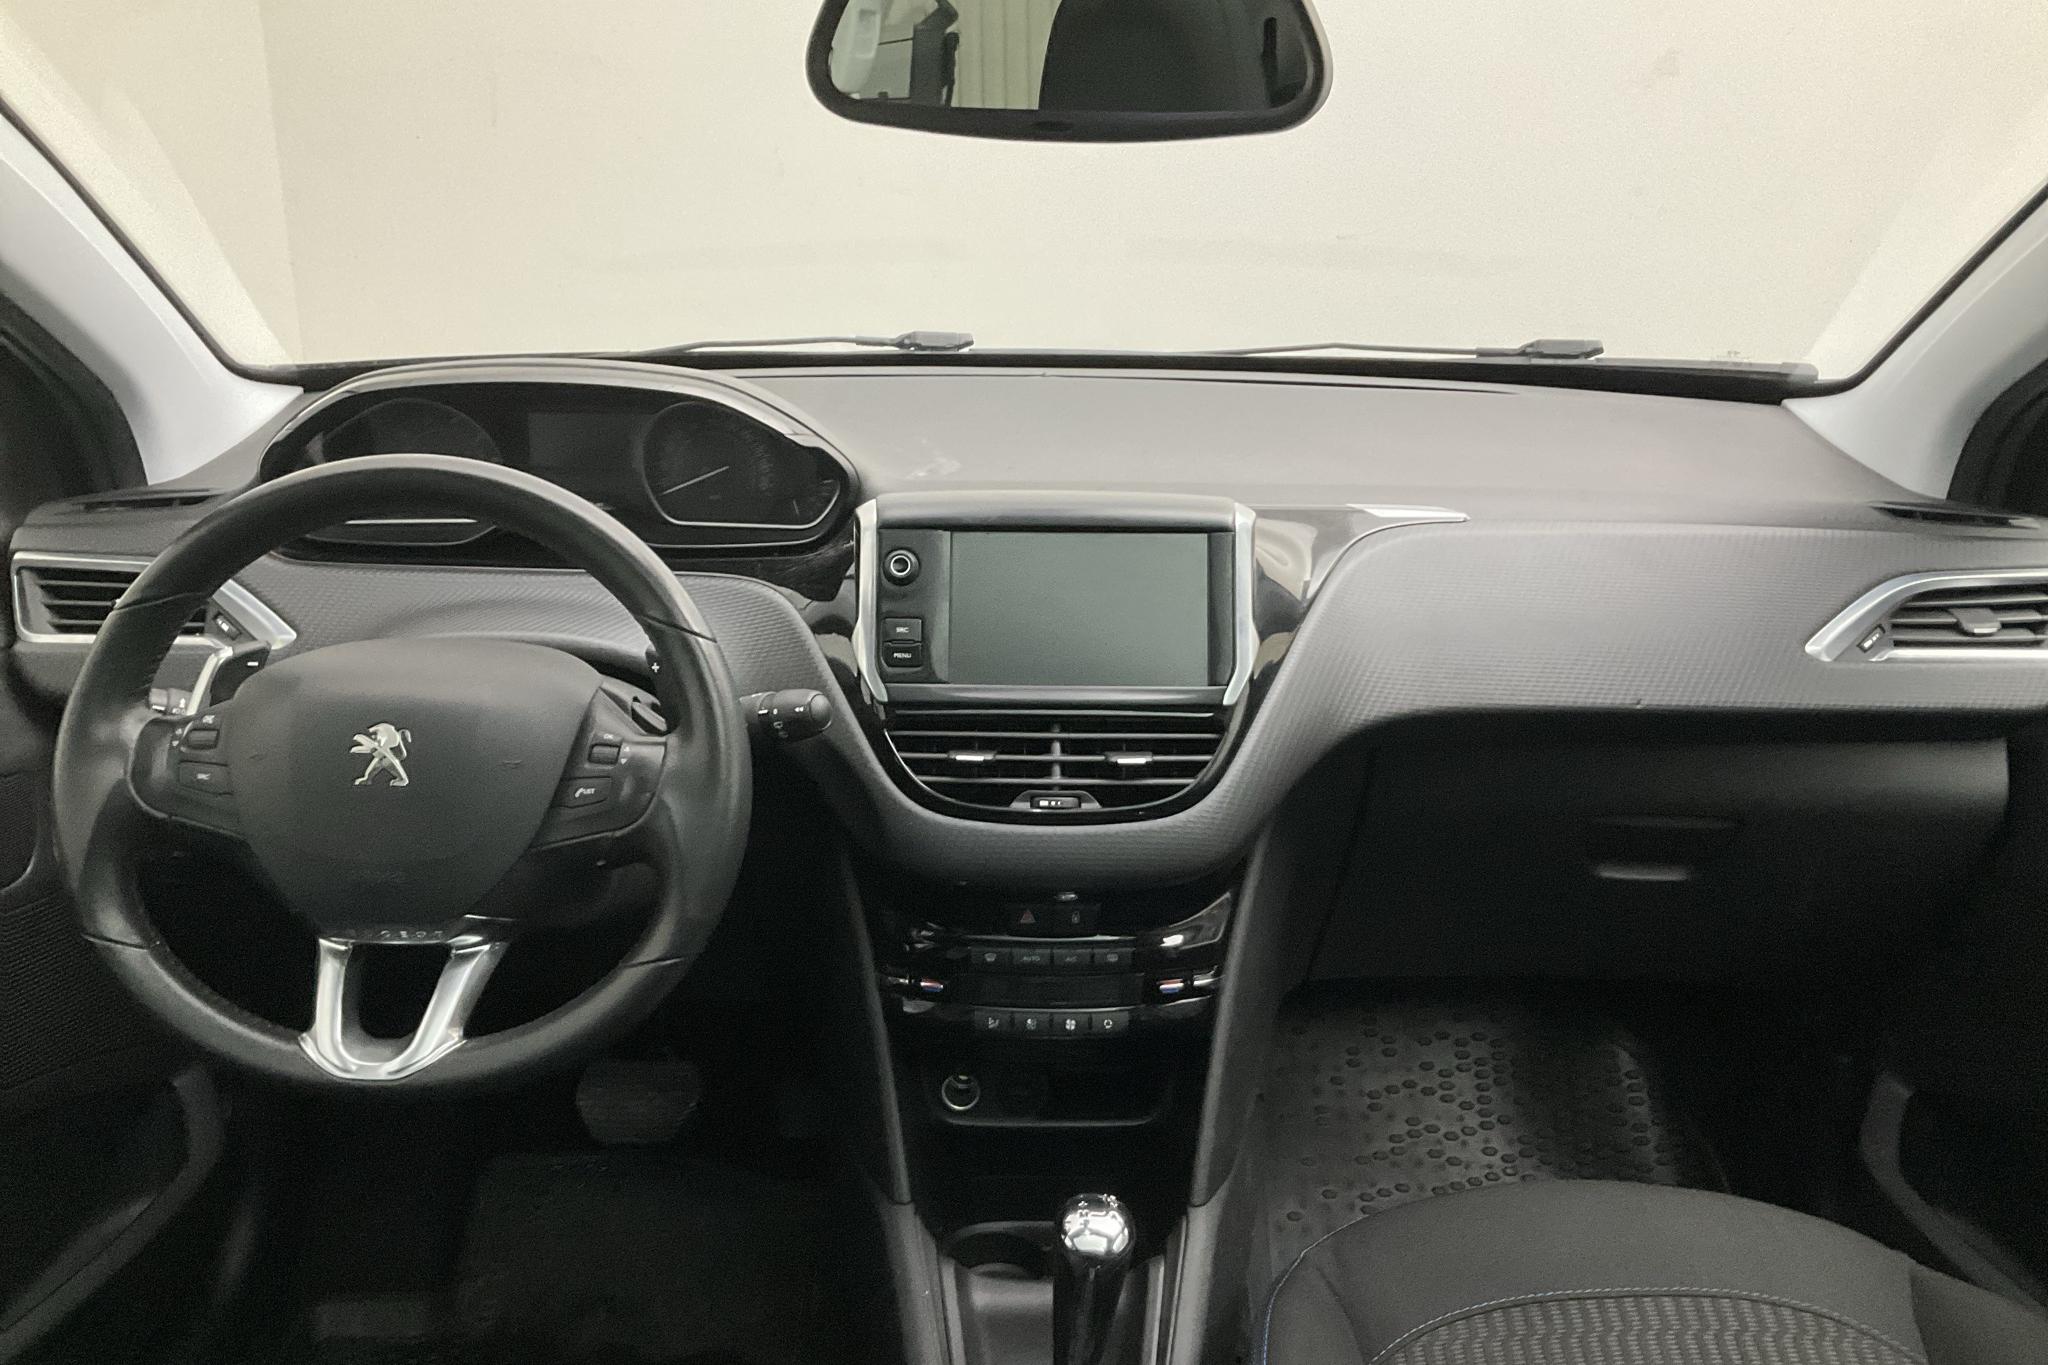 Peugeot 208 PureTech 5dr (82hk) - 71 320 km - Automatic - Dark Grey - 2018